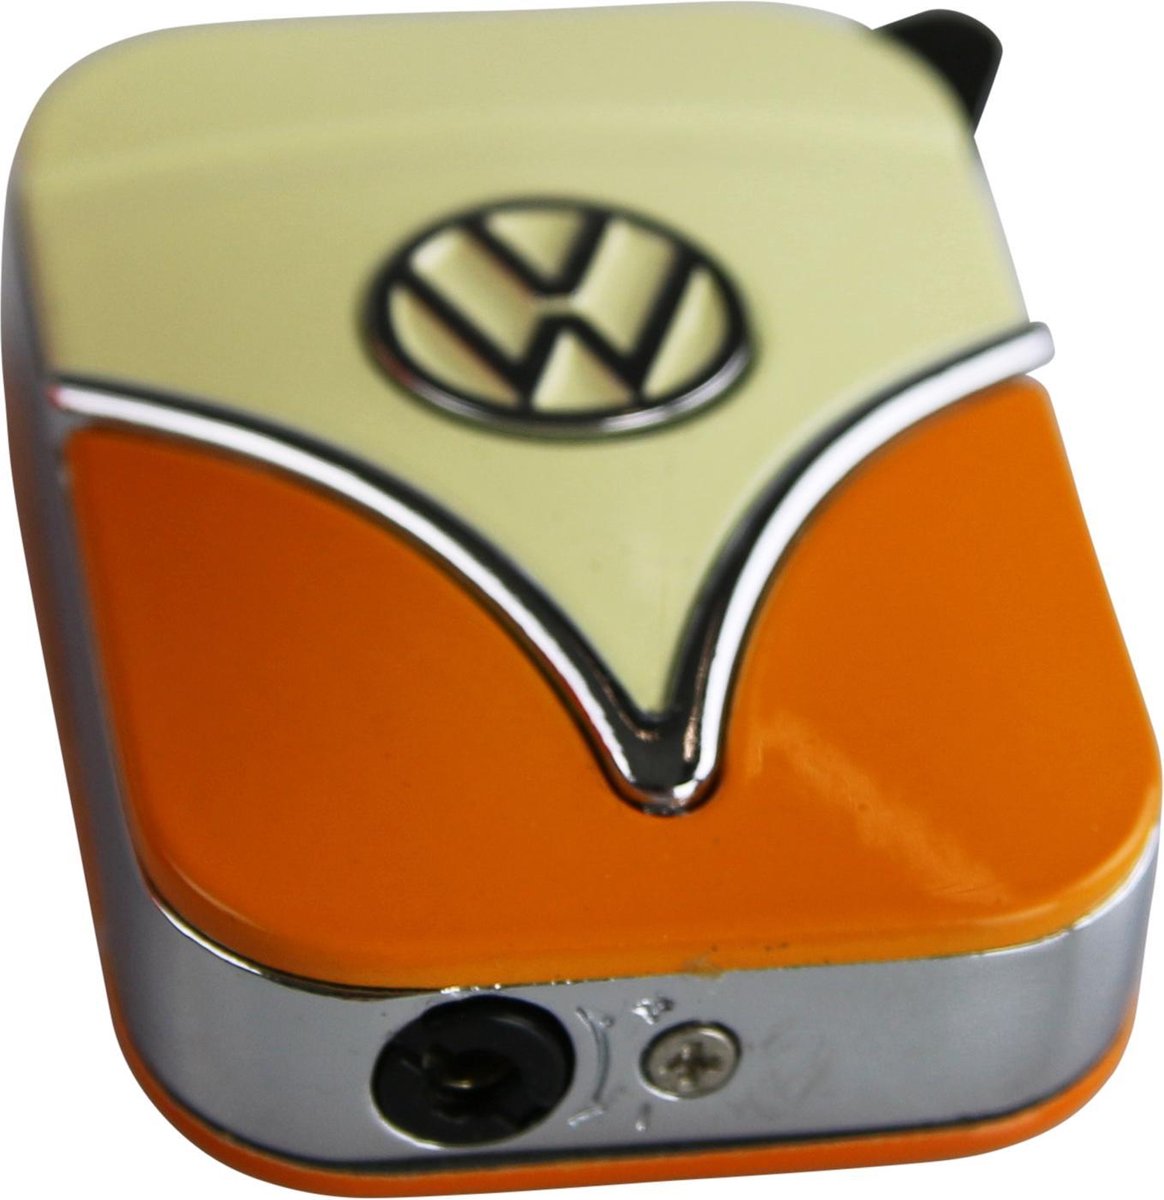 Aansteker Gas - Volkswagen - Retro stijl – RVS - Oranje | bol.com